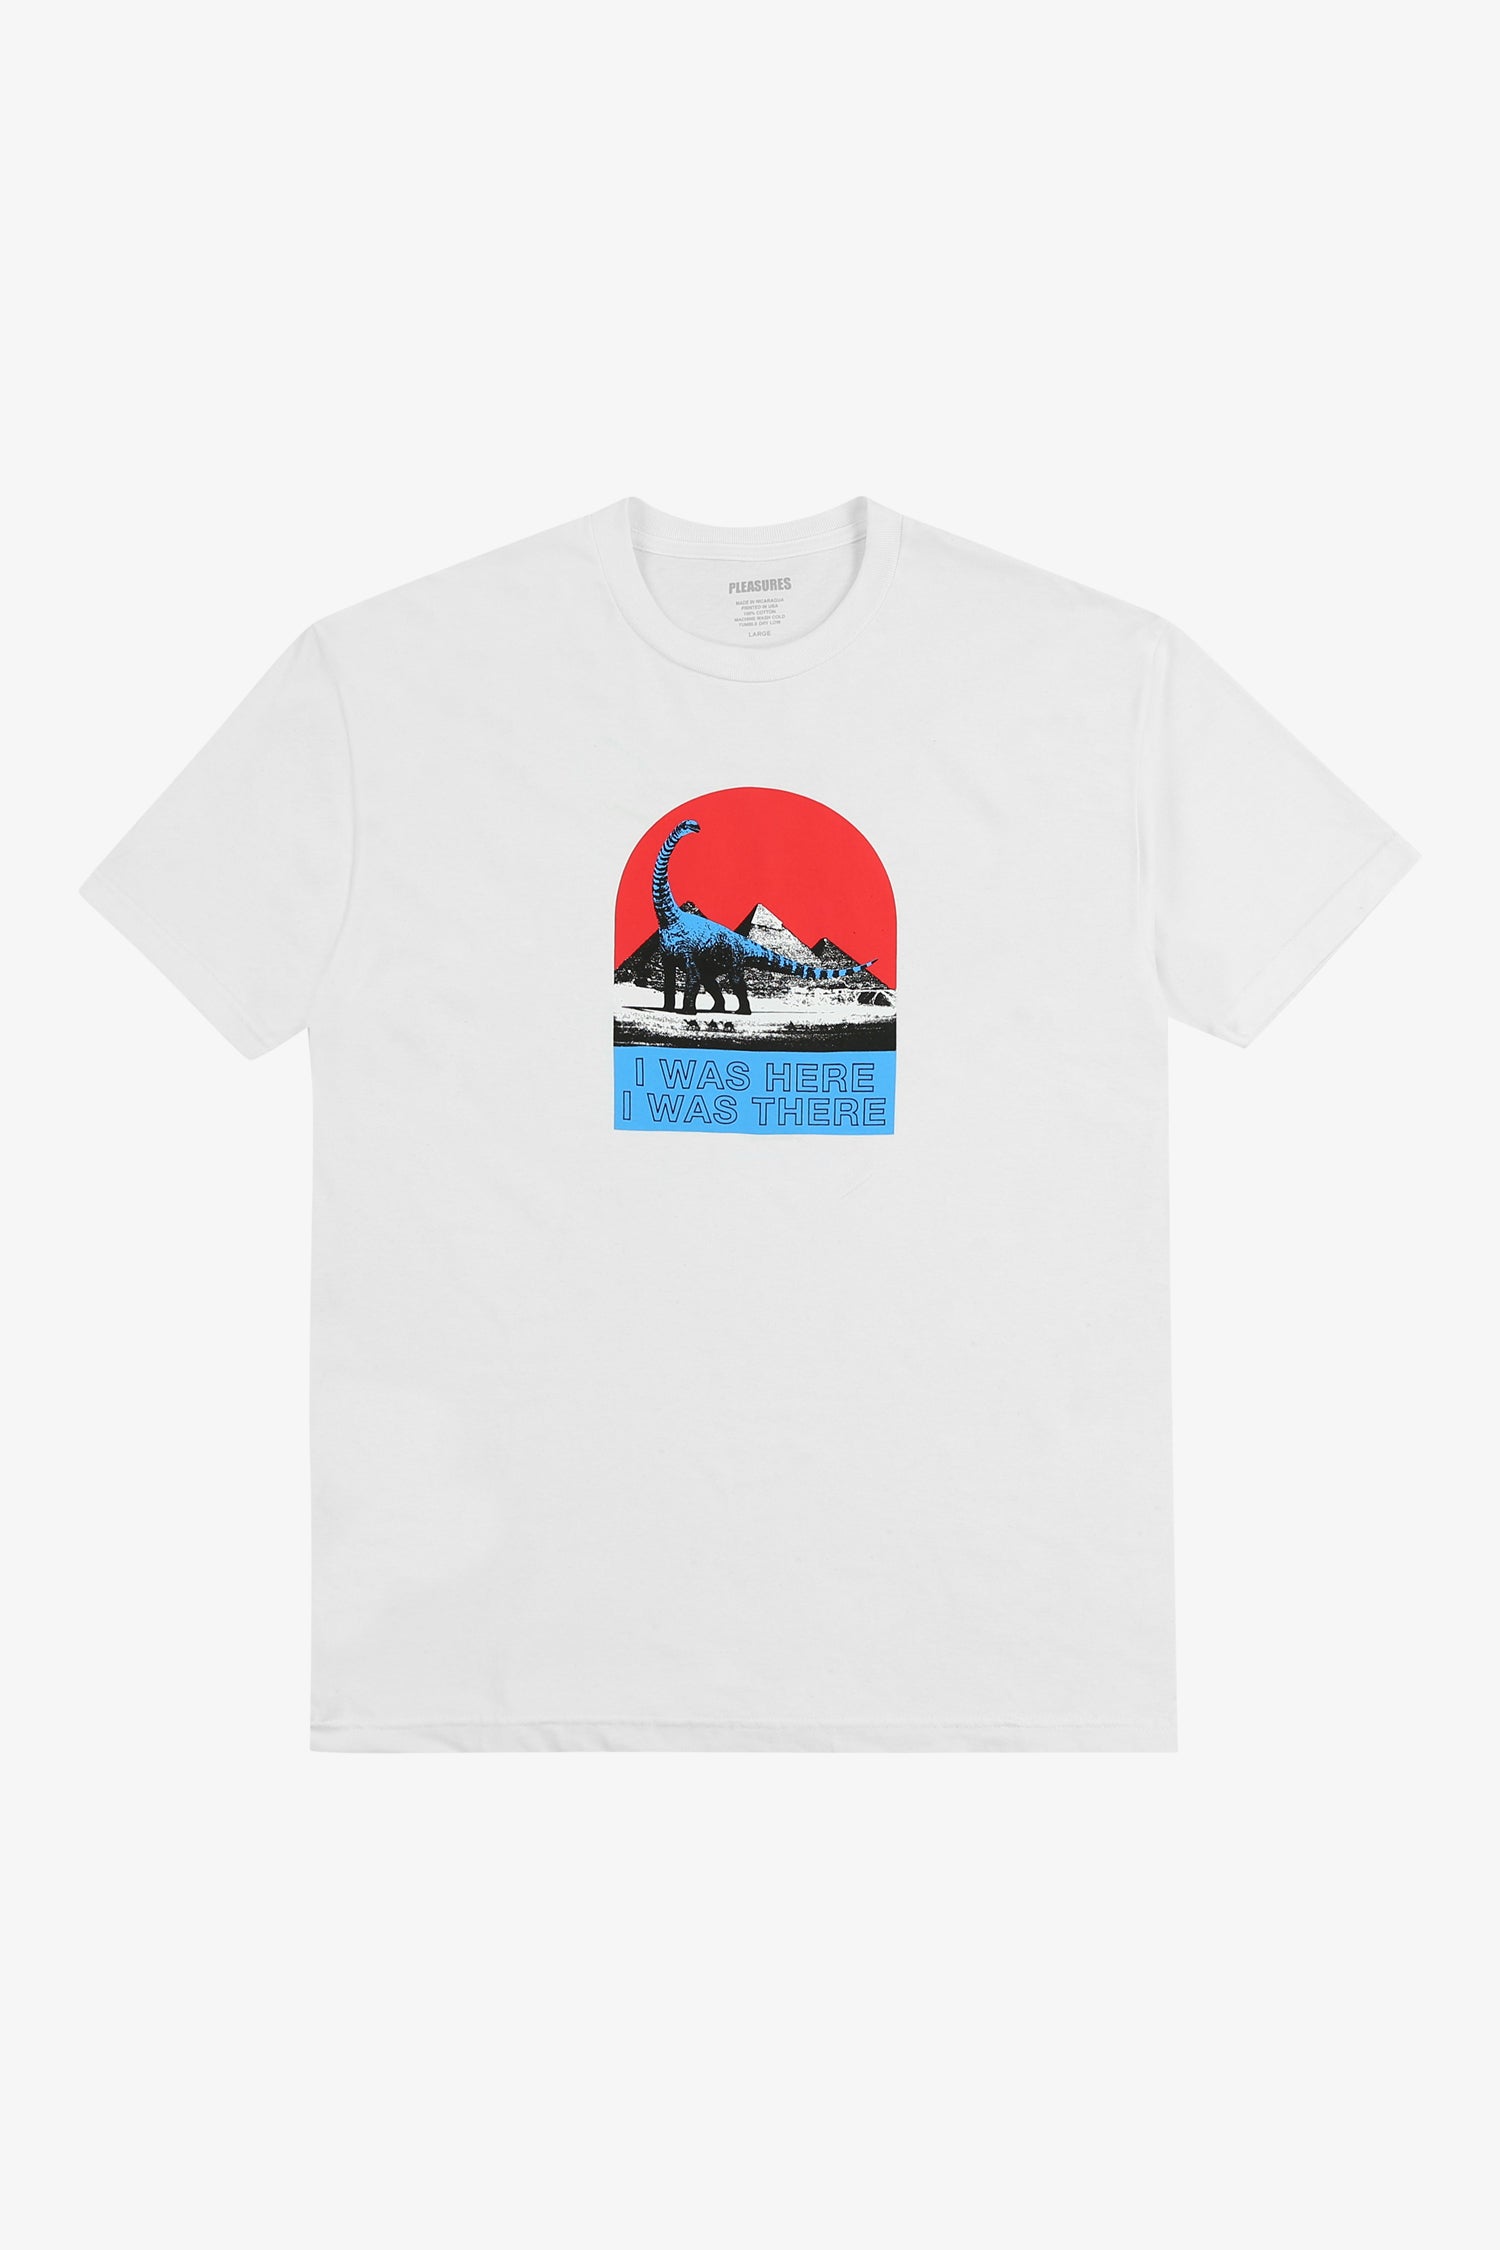 Tourist T-Shirt-FRAME